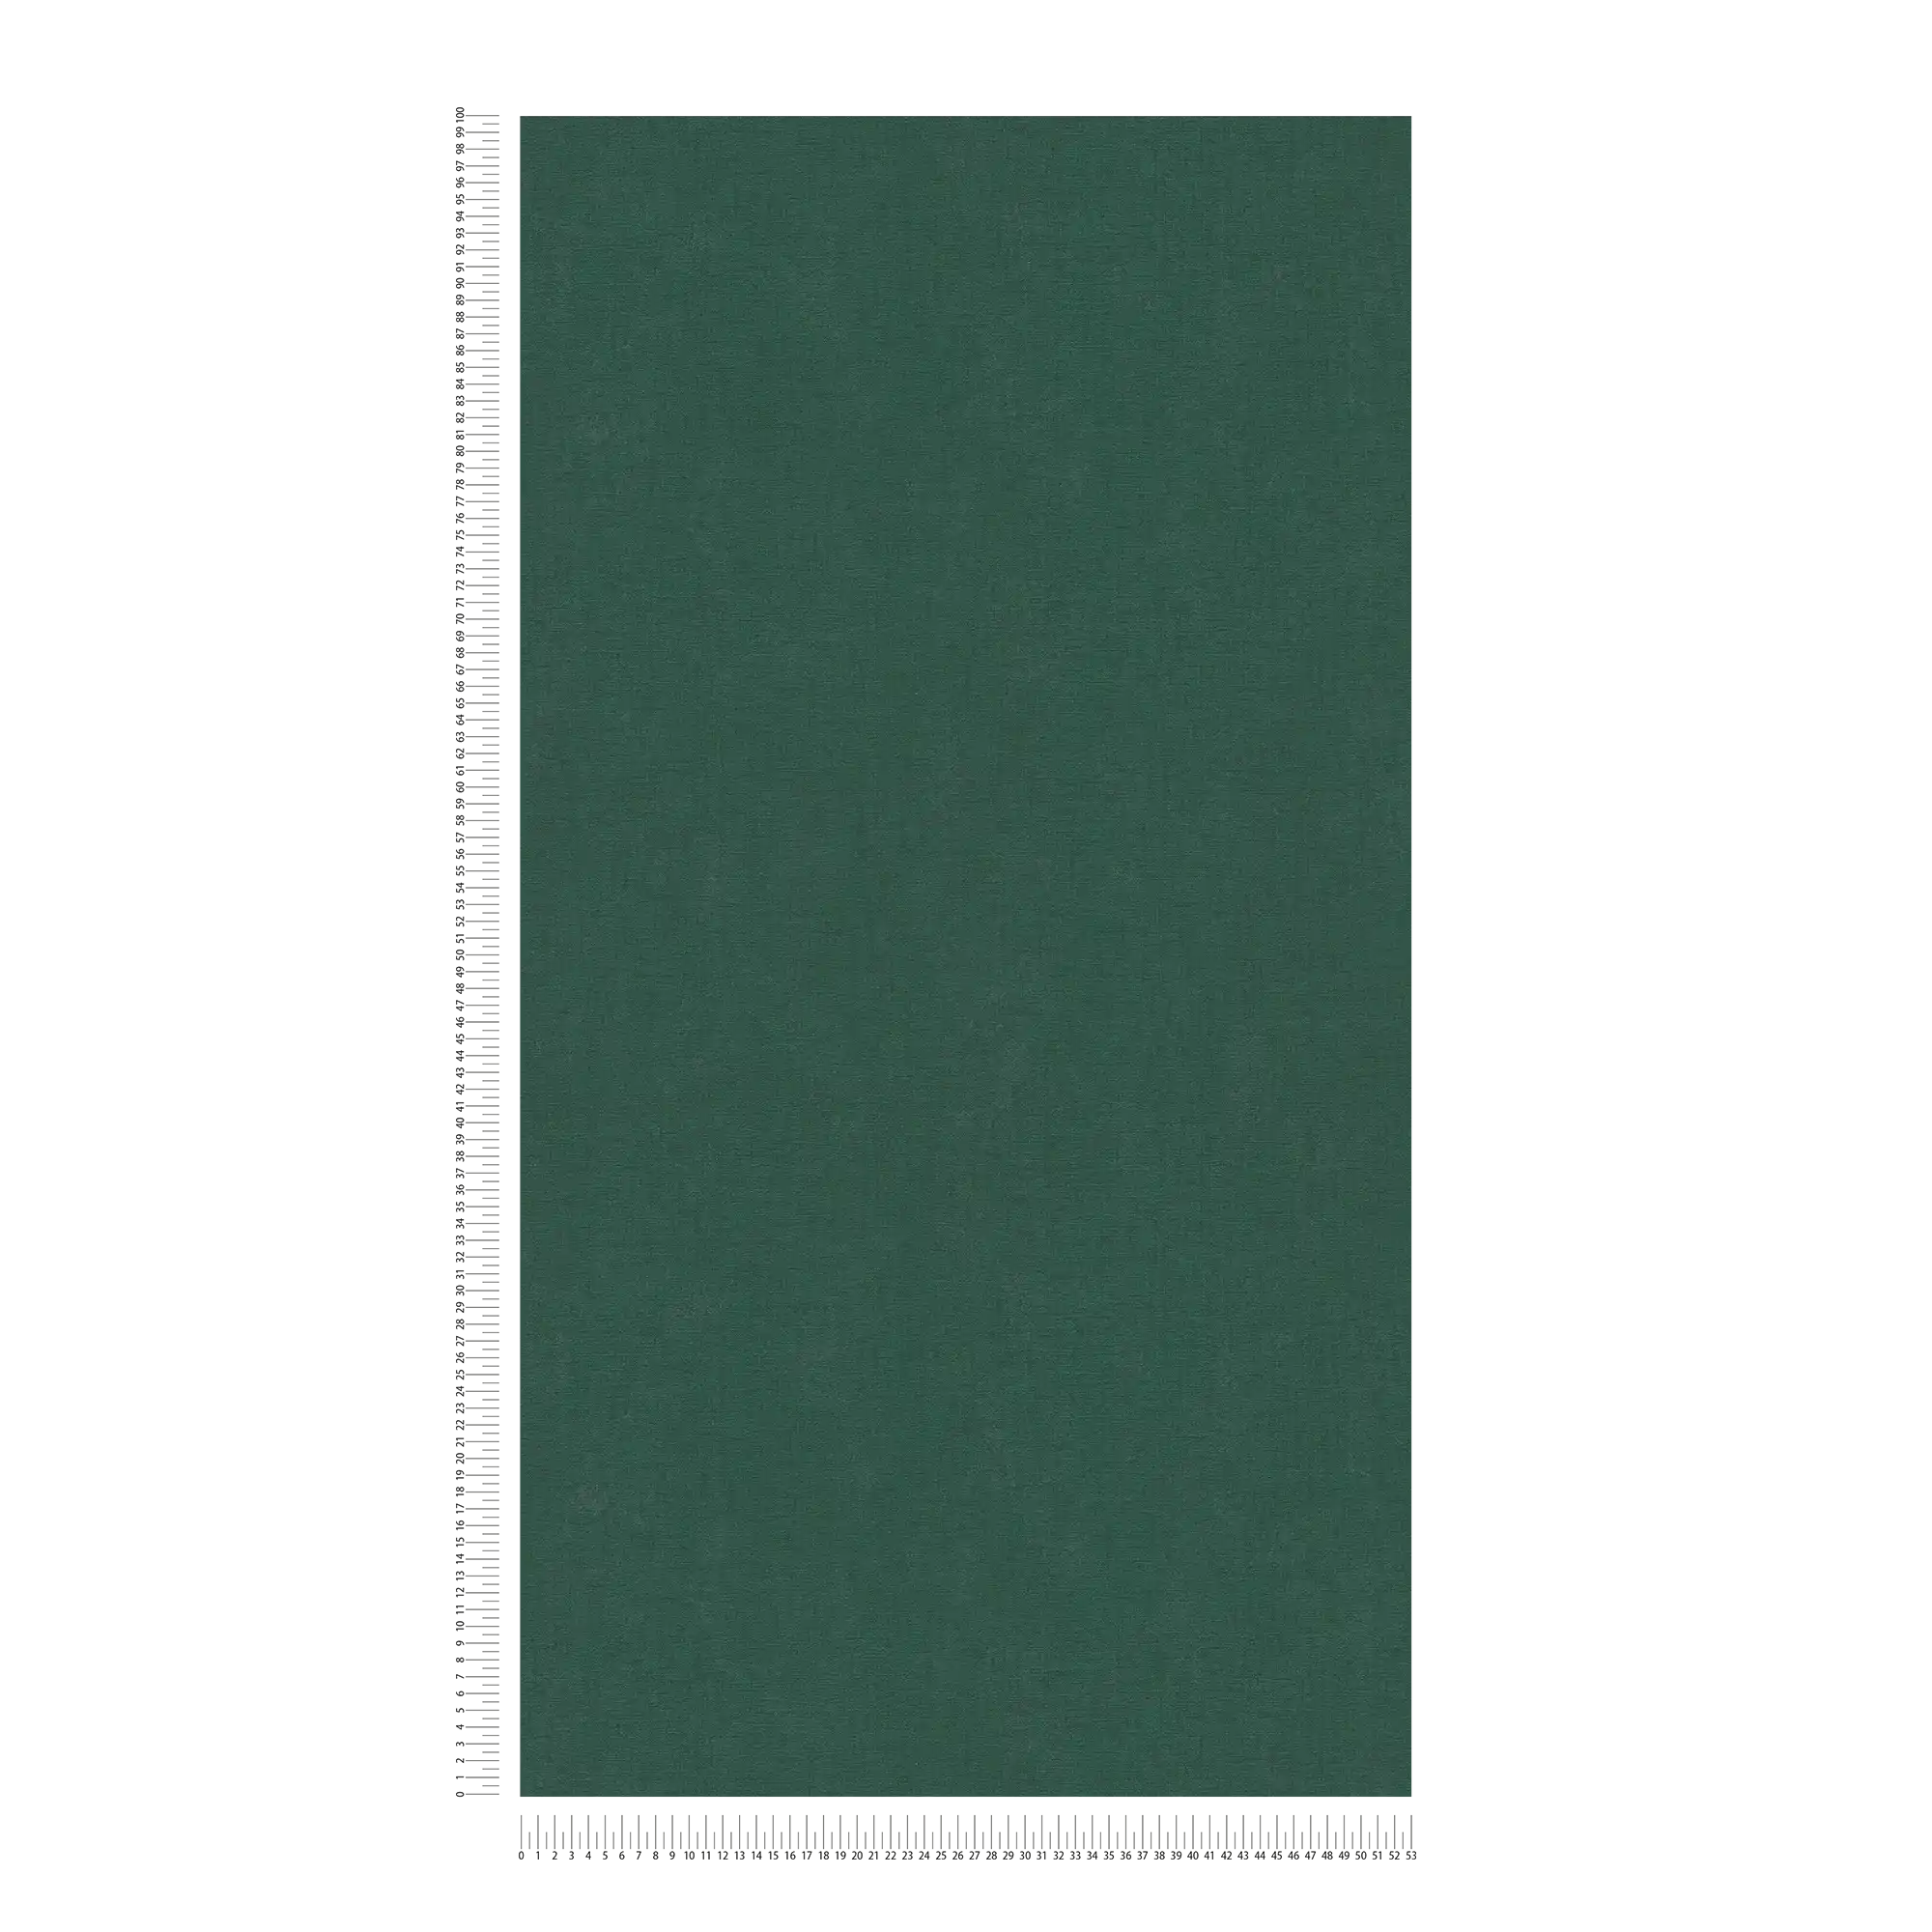             Carta da parati monocolore in tessuto non tessuto a trama leggera - verde, verde scuro
        